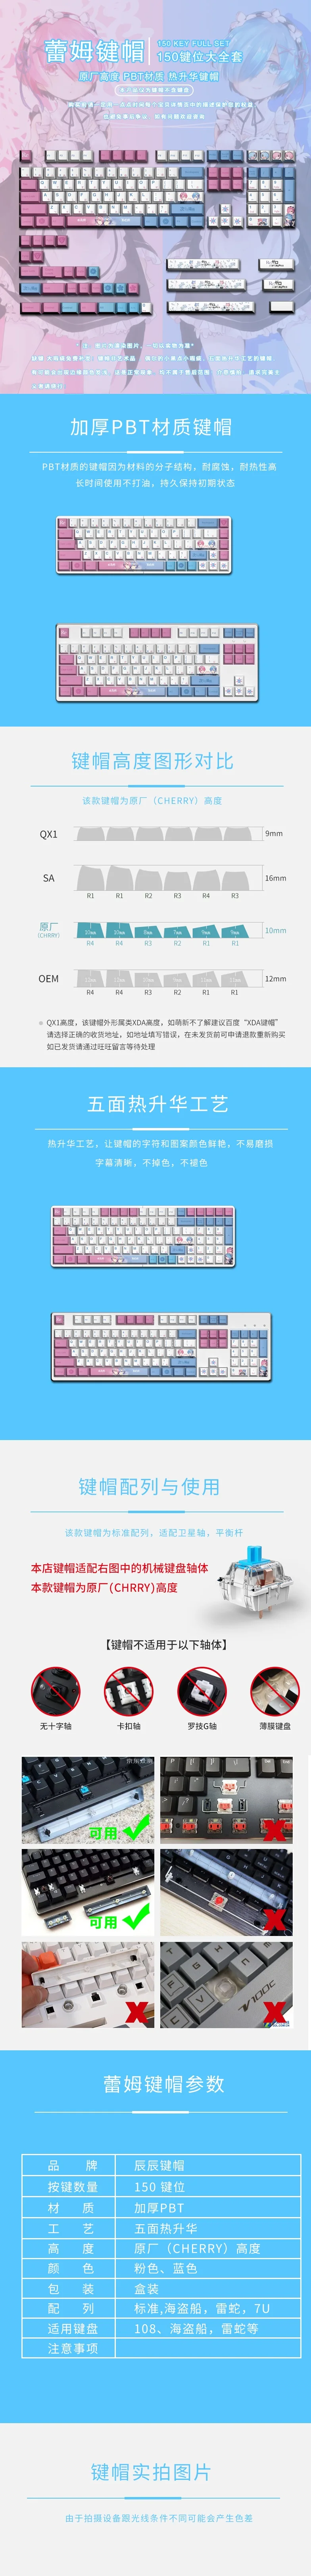 H7538bd1becd44f9d81cbc282c1644b28R - Anime Keyboard